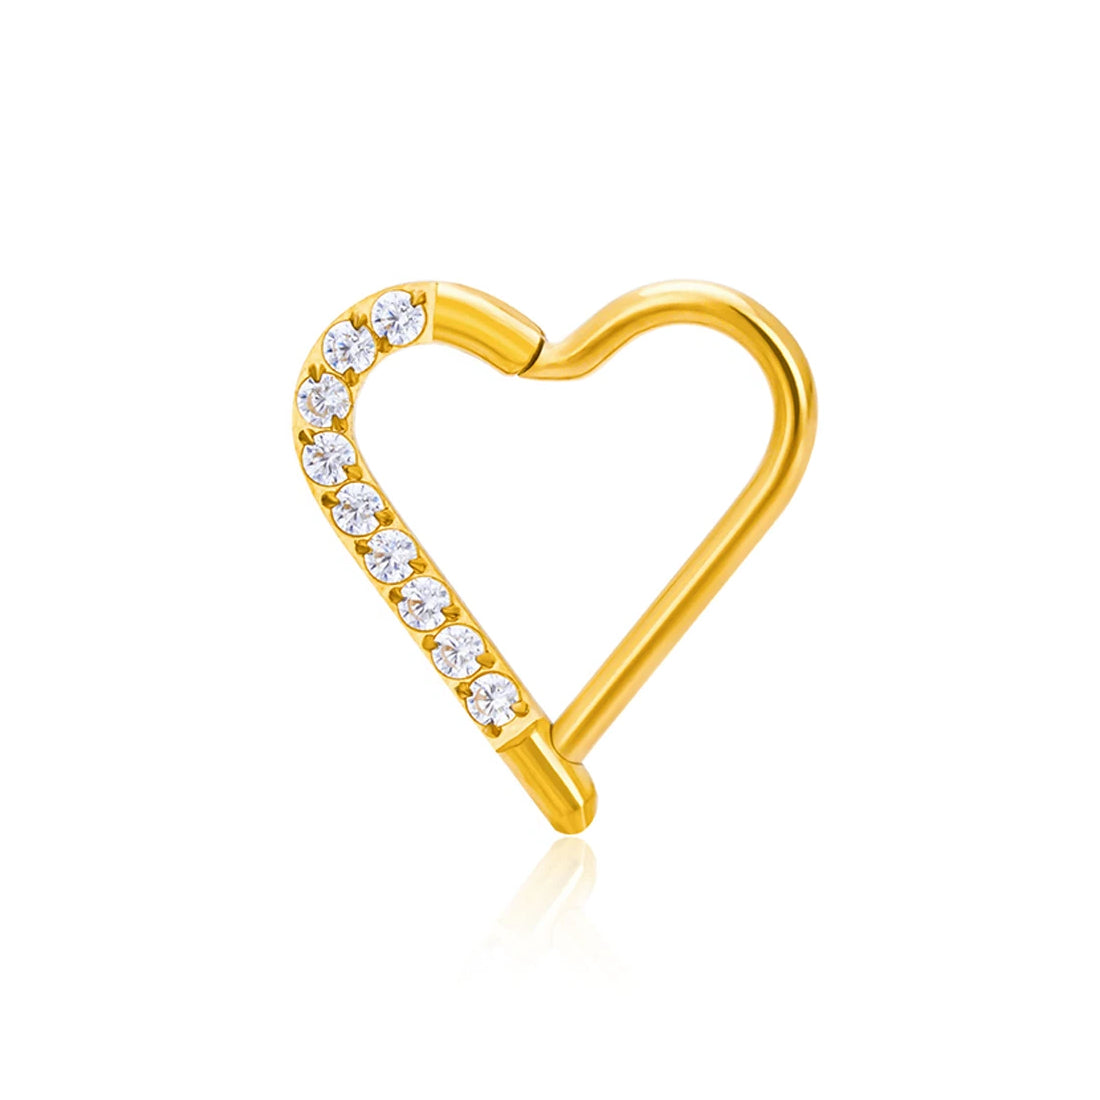 Daith Herzpiercing, Daith-Ring aus Gold und Silber, Titan 16G, mit CZ-Steinen, aufklappbarer Segment-Klicker